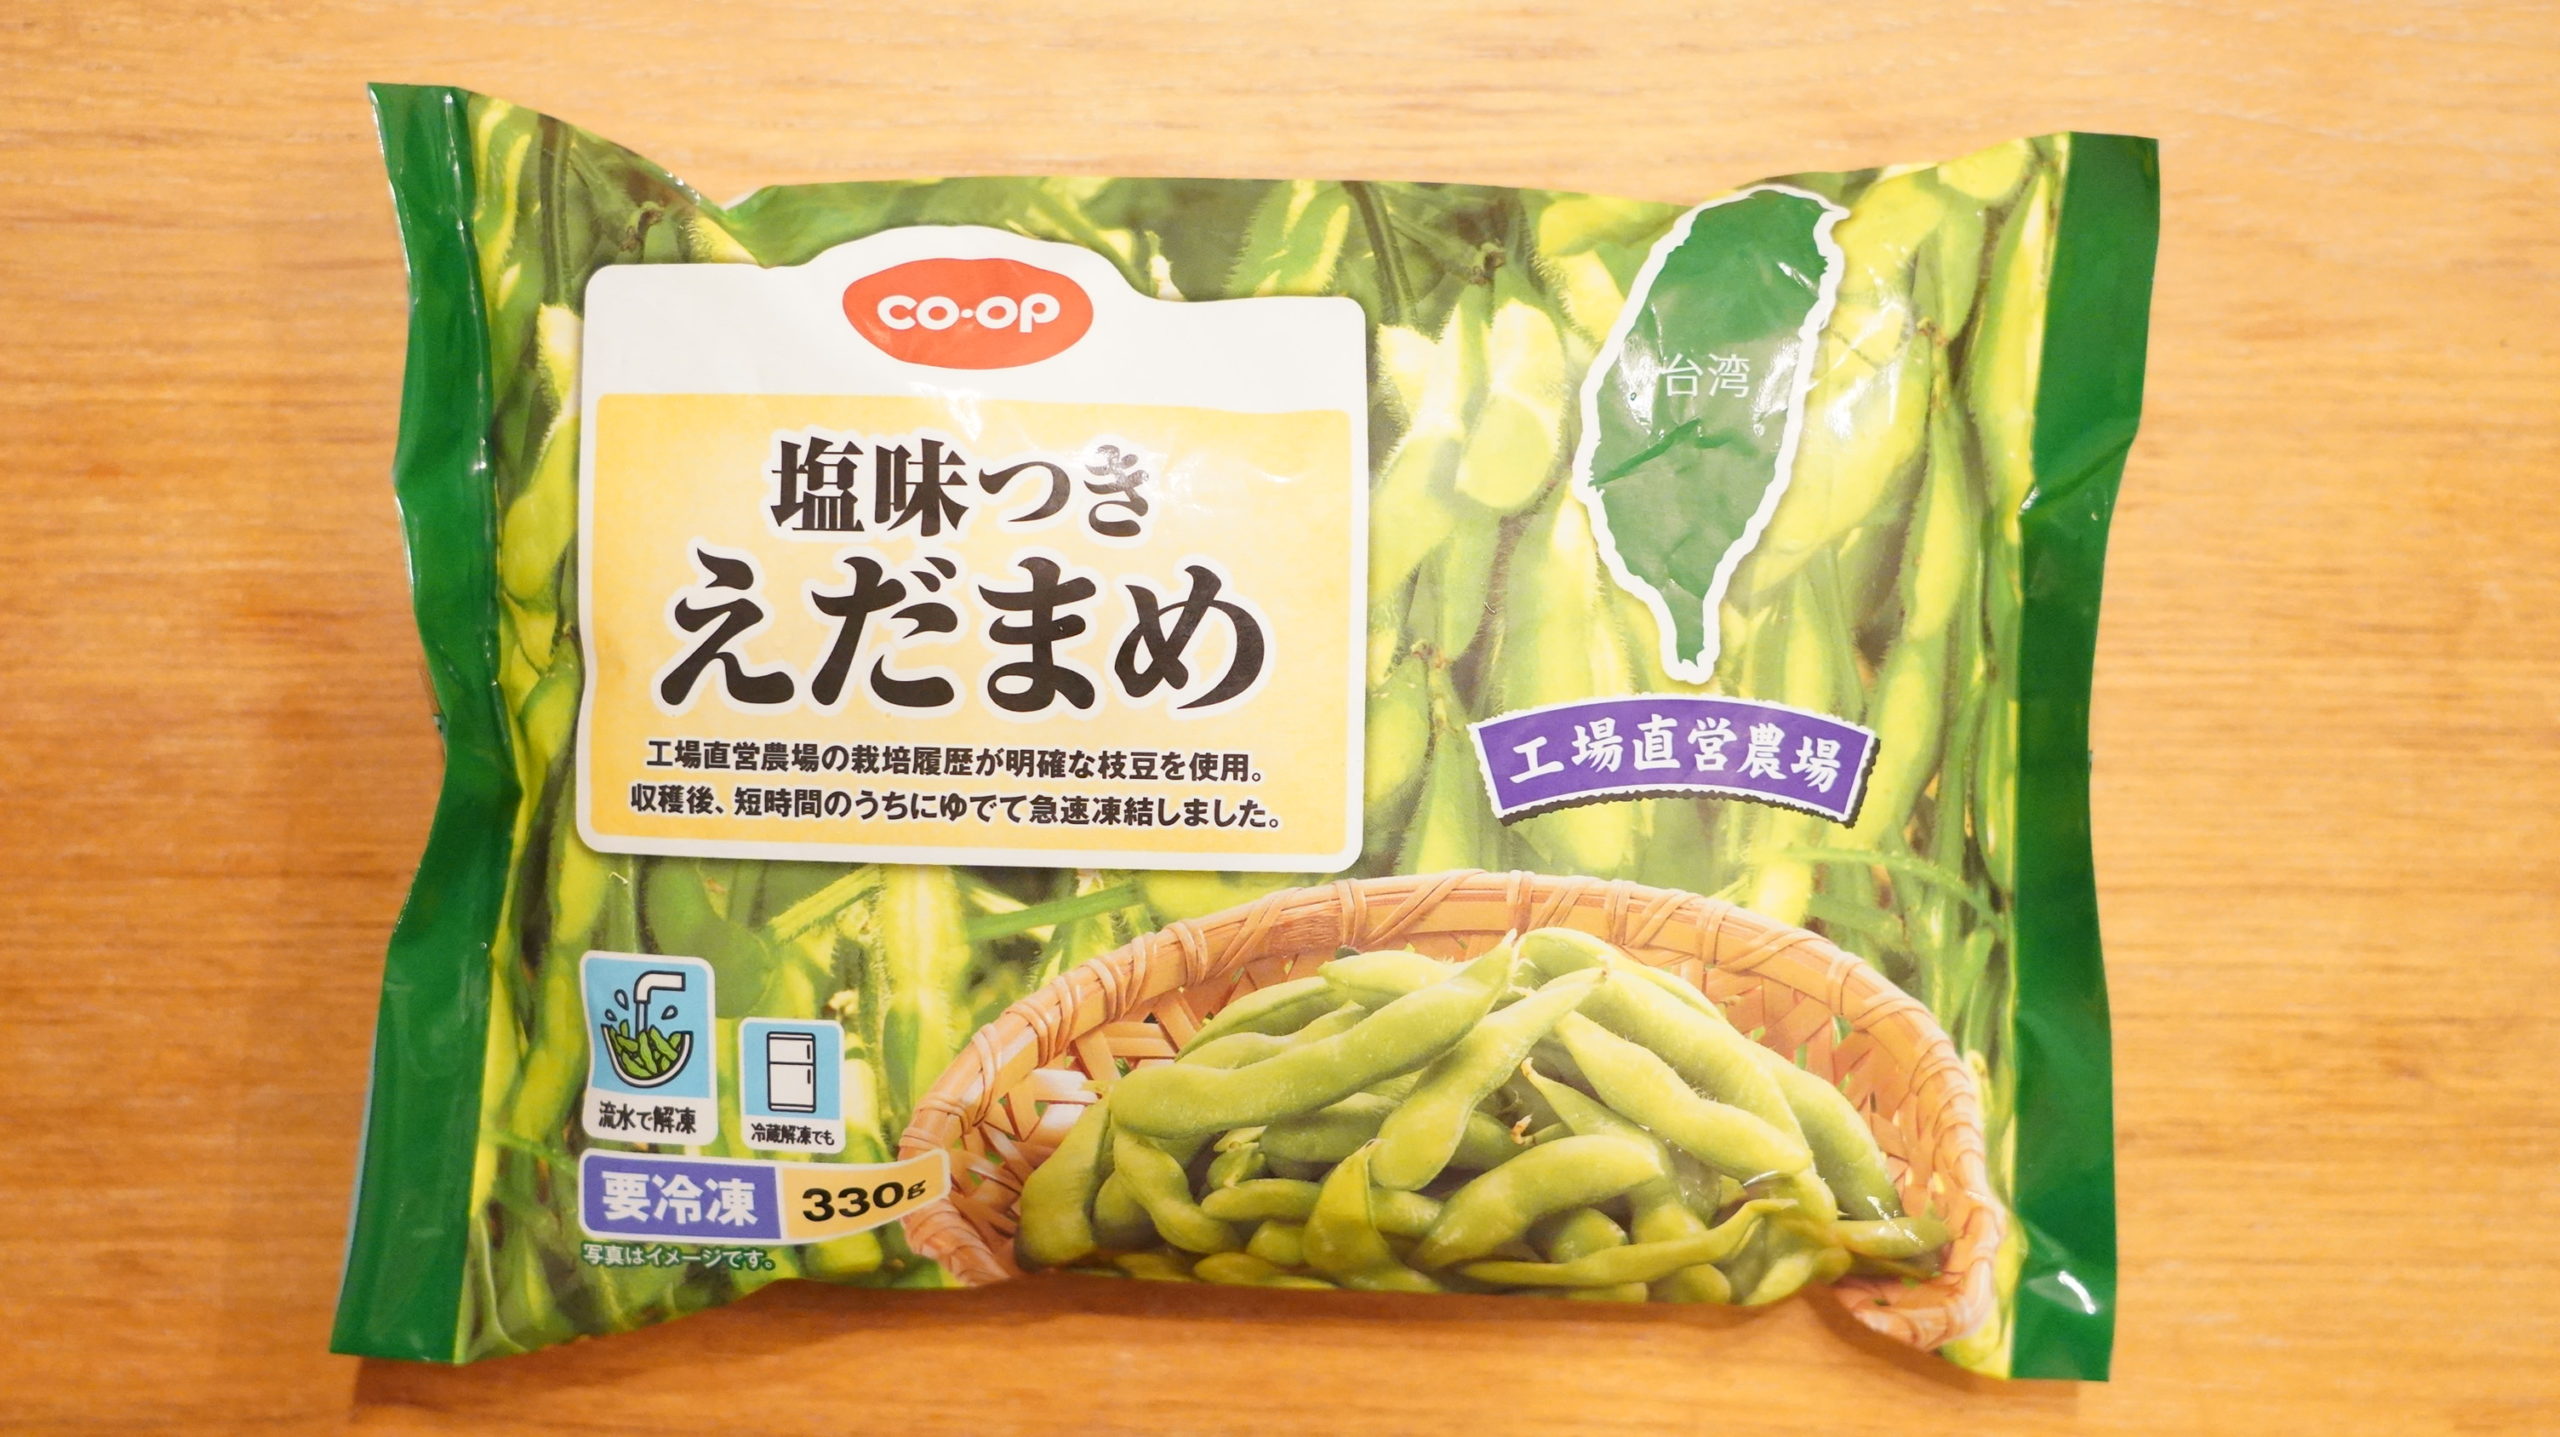 生協coop宅配の冷凍食品「塩味つき・えだまめ」のパッケージ写真